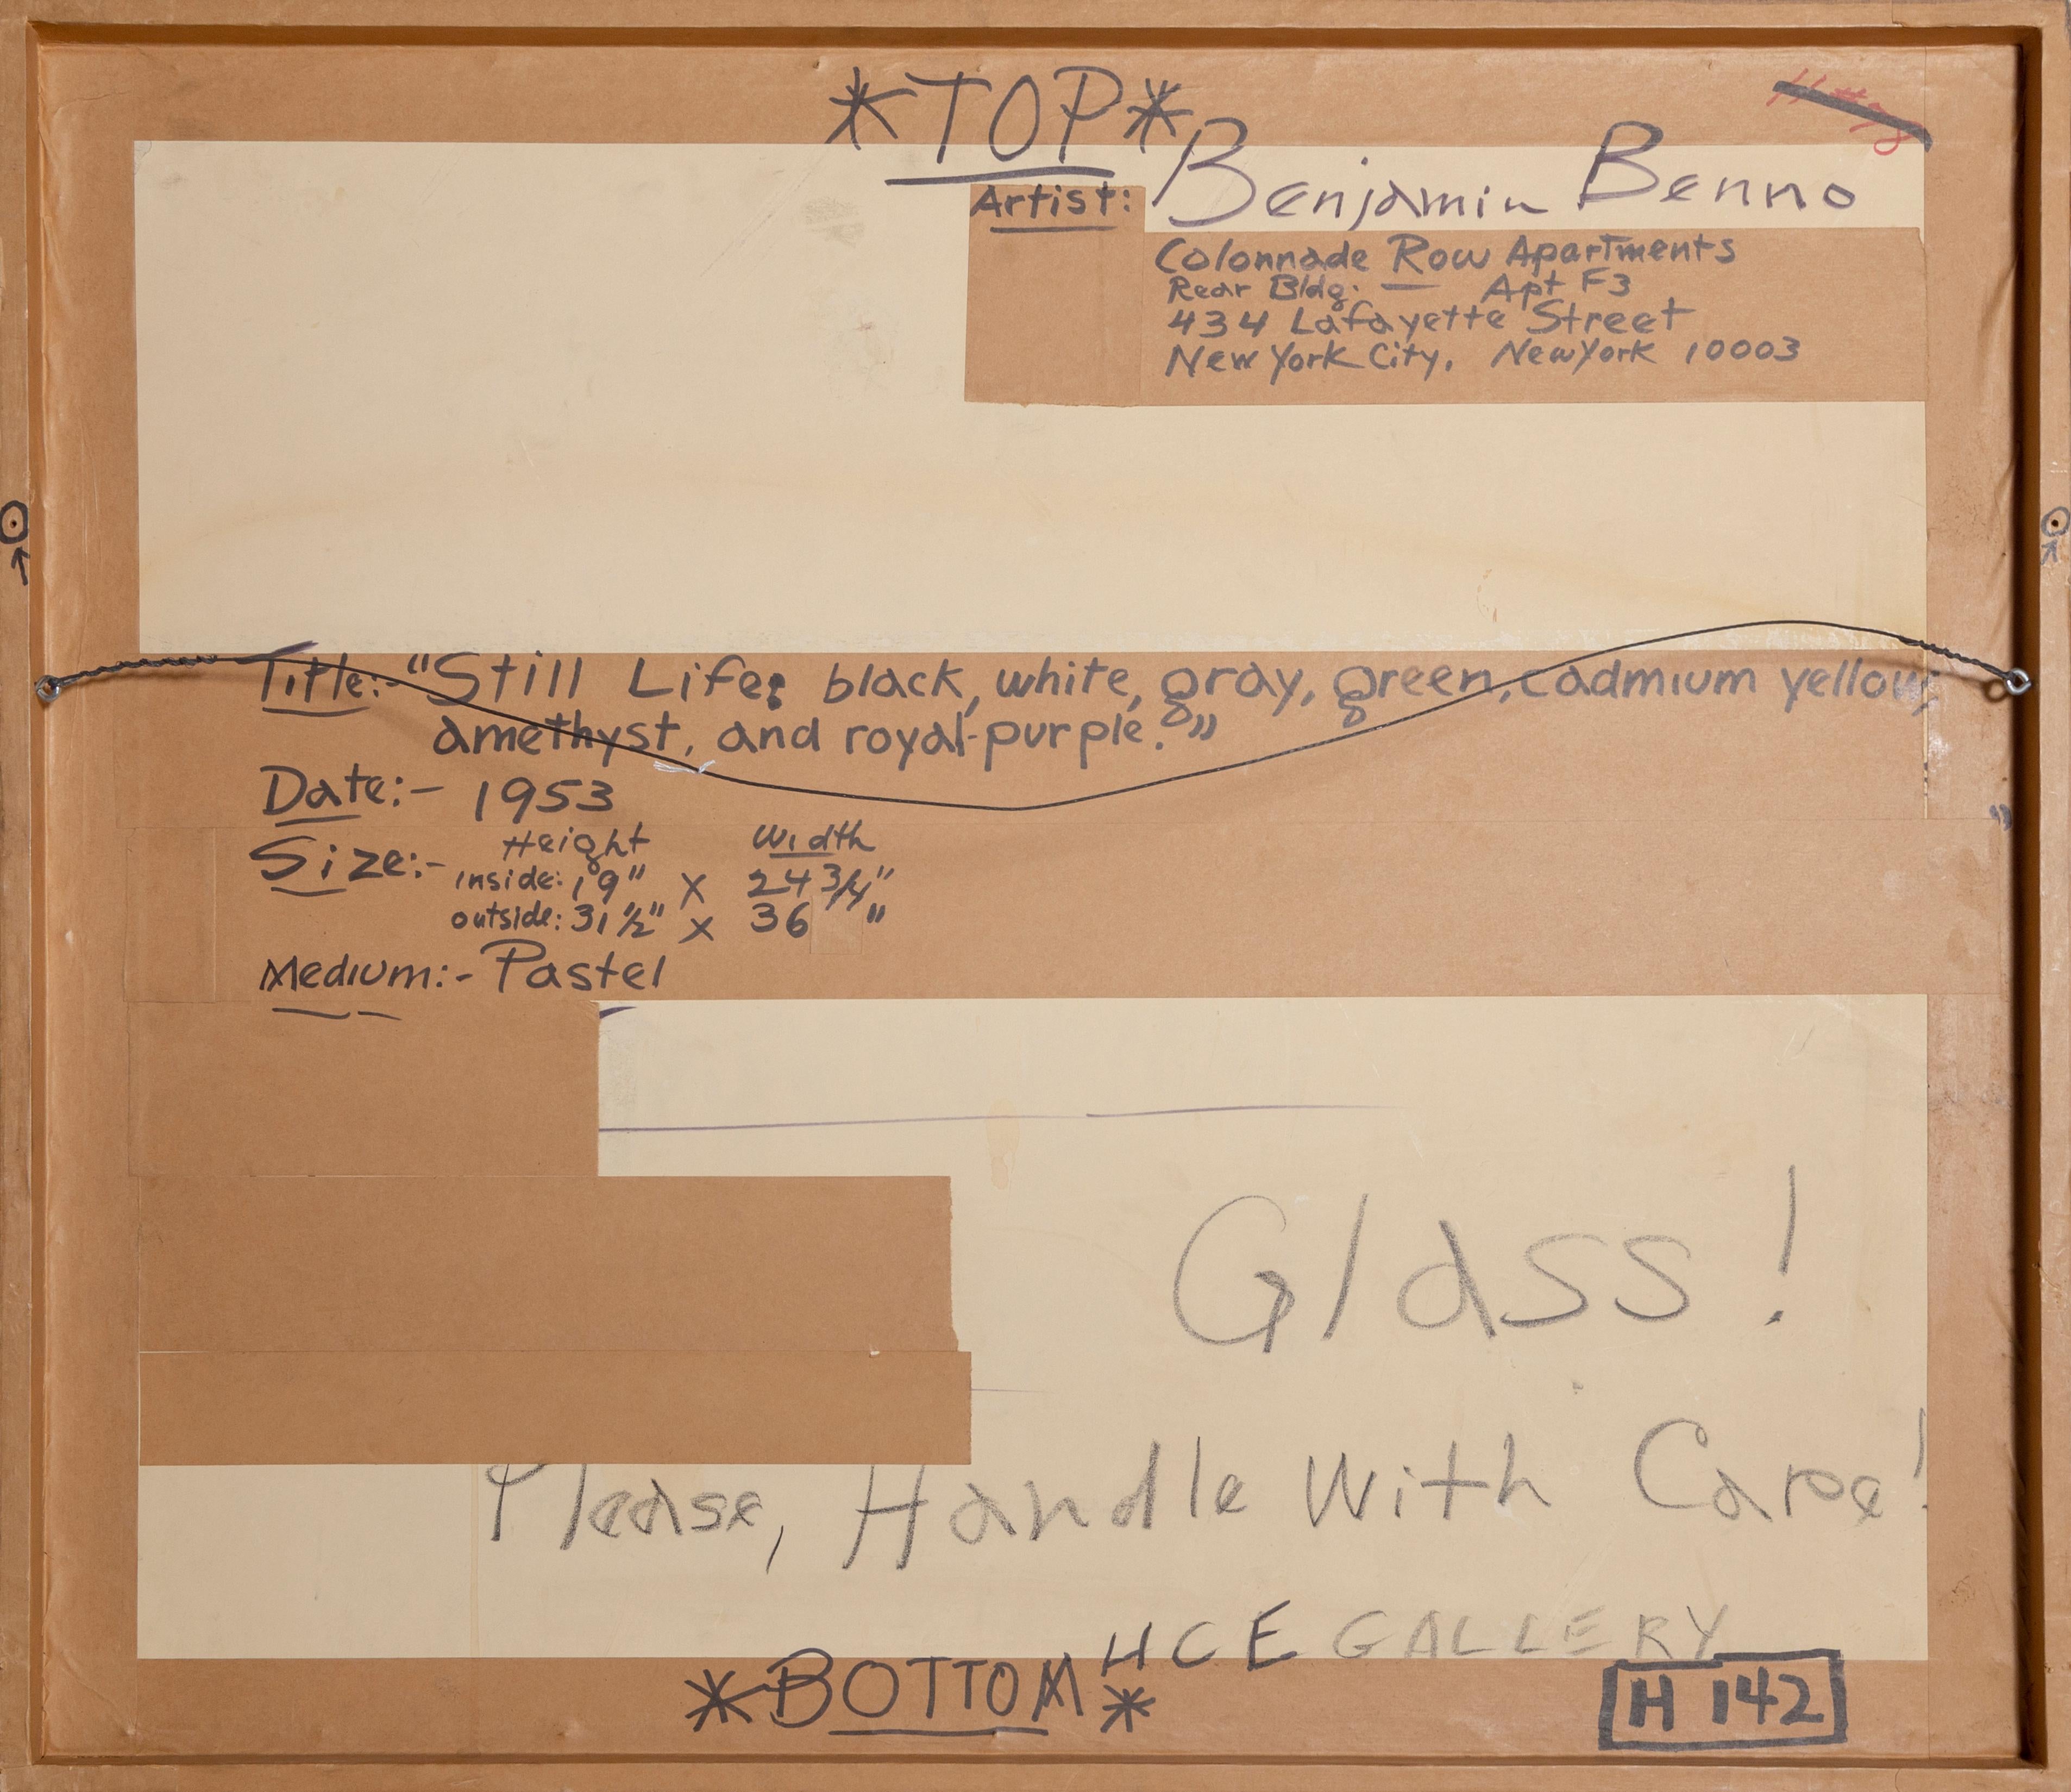 Ein Original-Pastell auf Papier von Benjamin Benno, Amerikaner (1901 - 1980) mit den Maßen 19 x 25 Zoll.  Schön gerahmt auf 31 x 36 Zoll.  In den frühen 1930er Jahren hatte er sich einen Ruf als Mitglied der internationalen Avantgarde erworben und